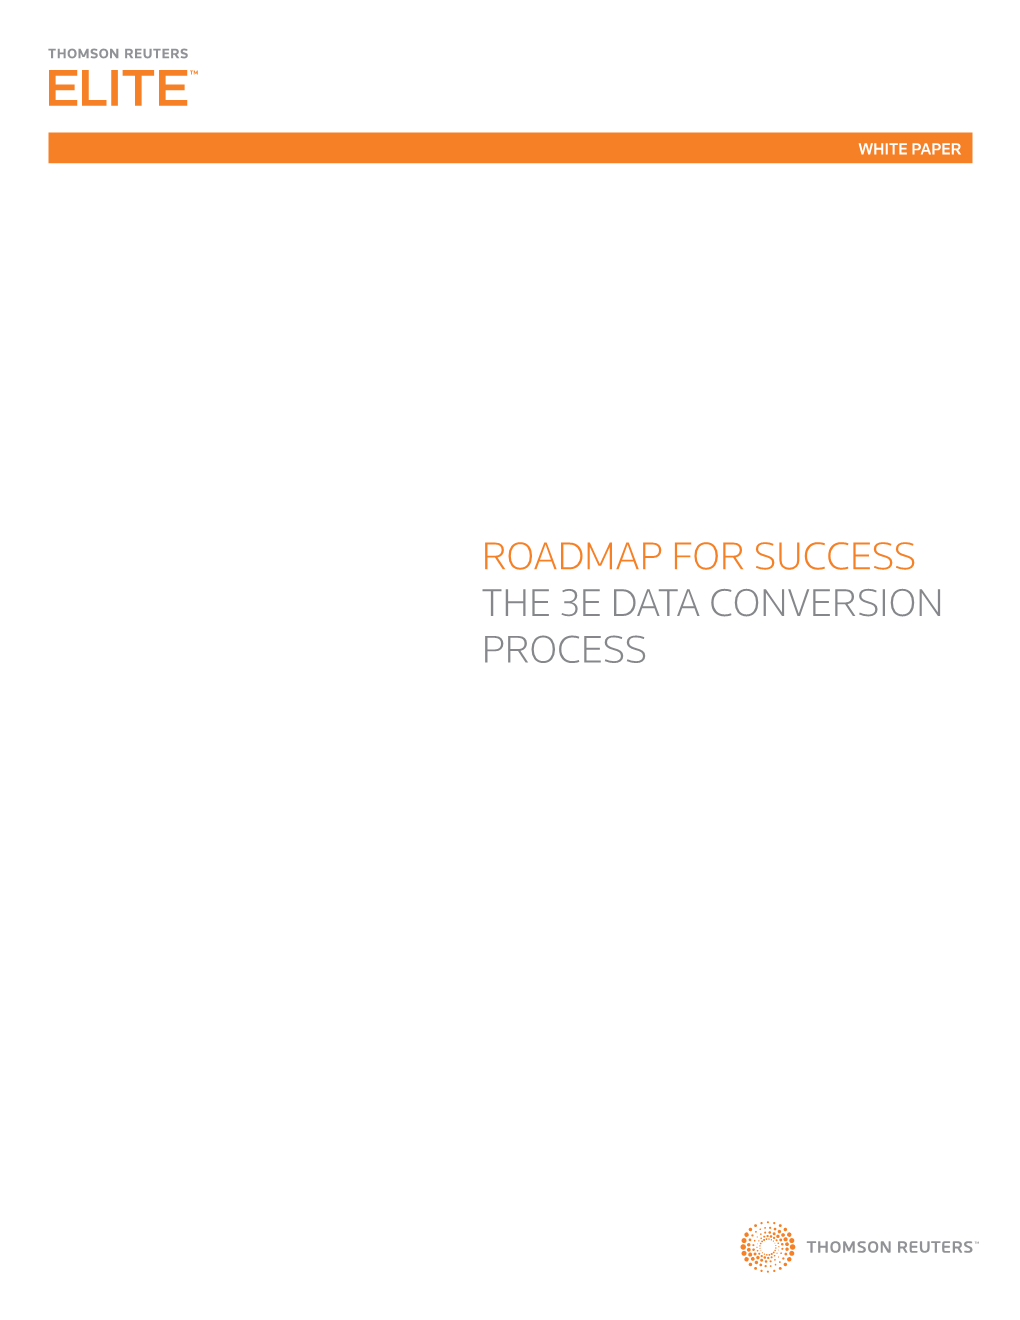 Roadmap for Success the 3E Data Conversion Process Roadmap for Success: the 3E Data Conversion Process